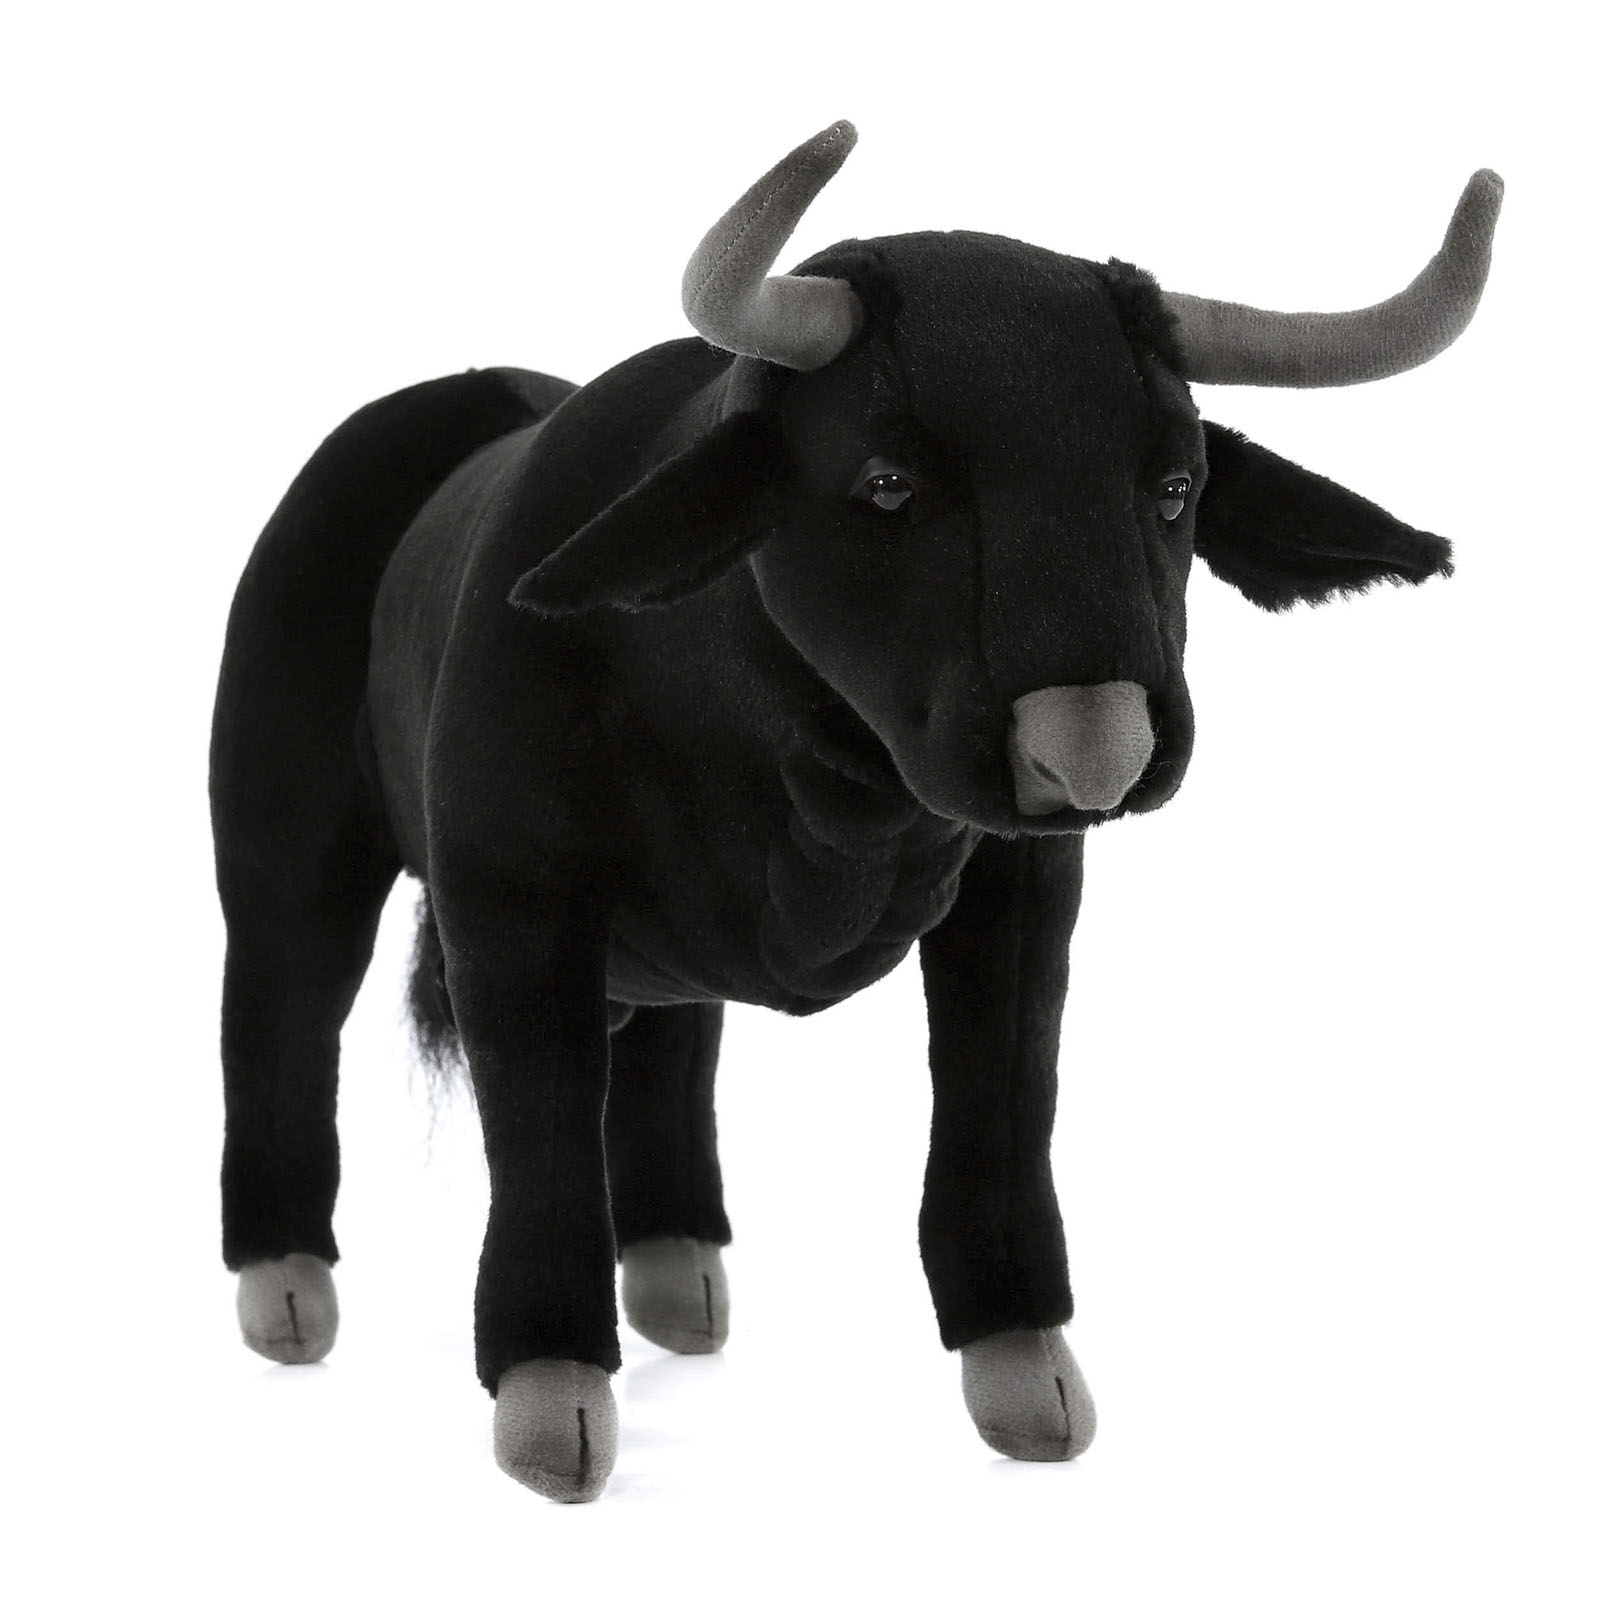 Реалистичная мягкая игрушка Hansa Creation Испанский бык, 40 см мягкая игрушка hansa персидский кот табби 45 см